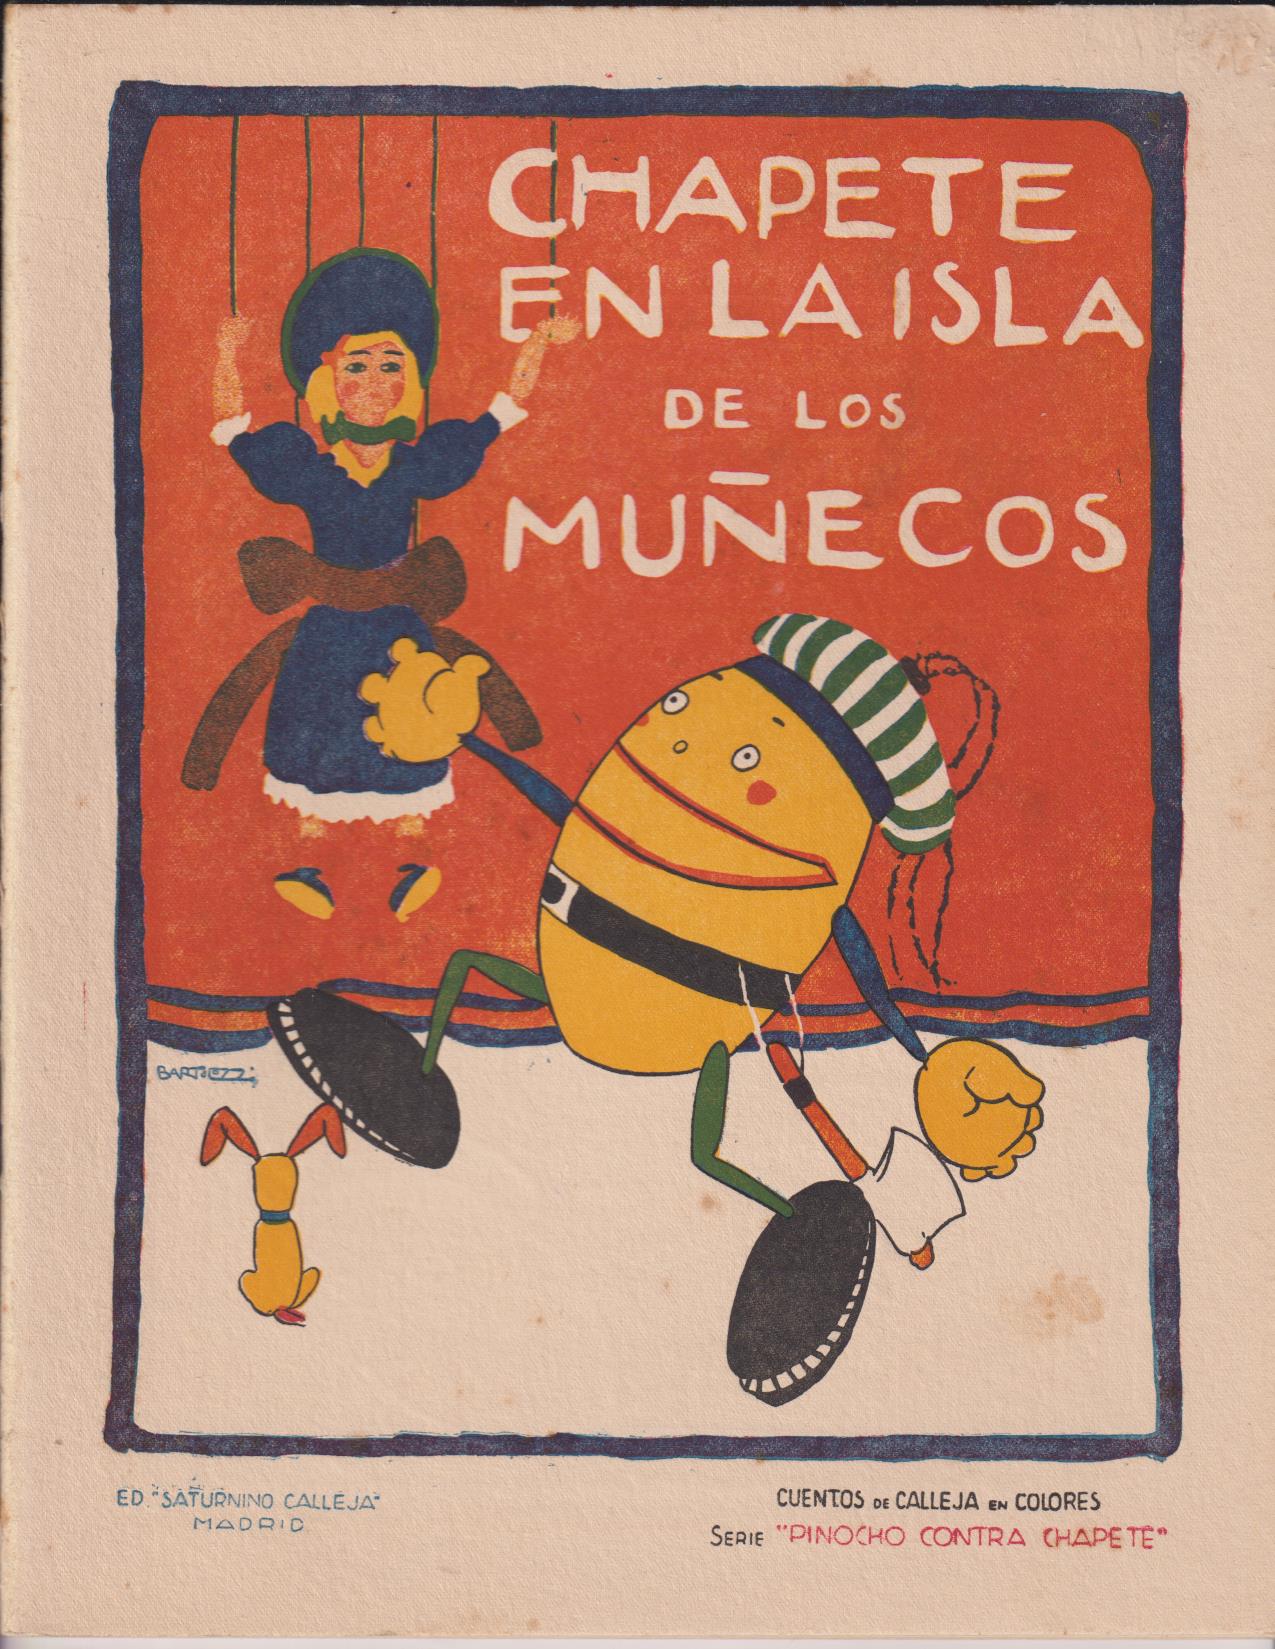 Chapete en la Isla de los Muñecos. Serie Pinocho y Chapete. Calleja 1923 (28x22) 16 páginas con ilustraciones en color